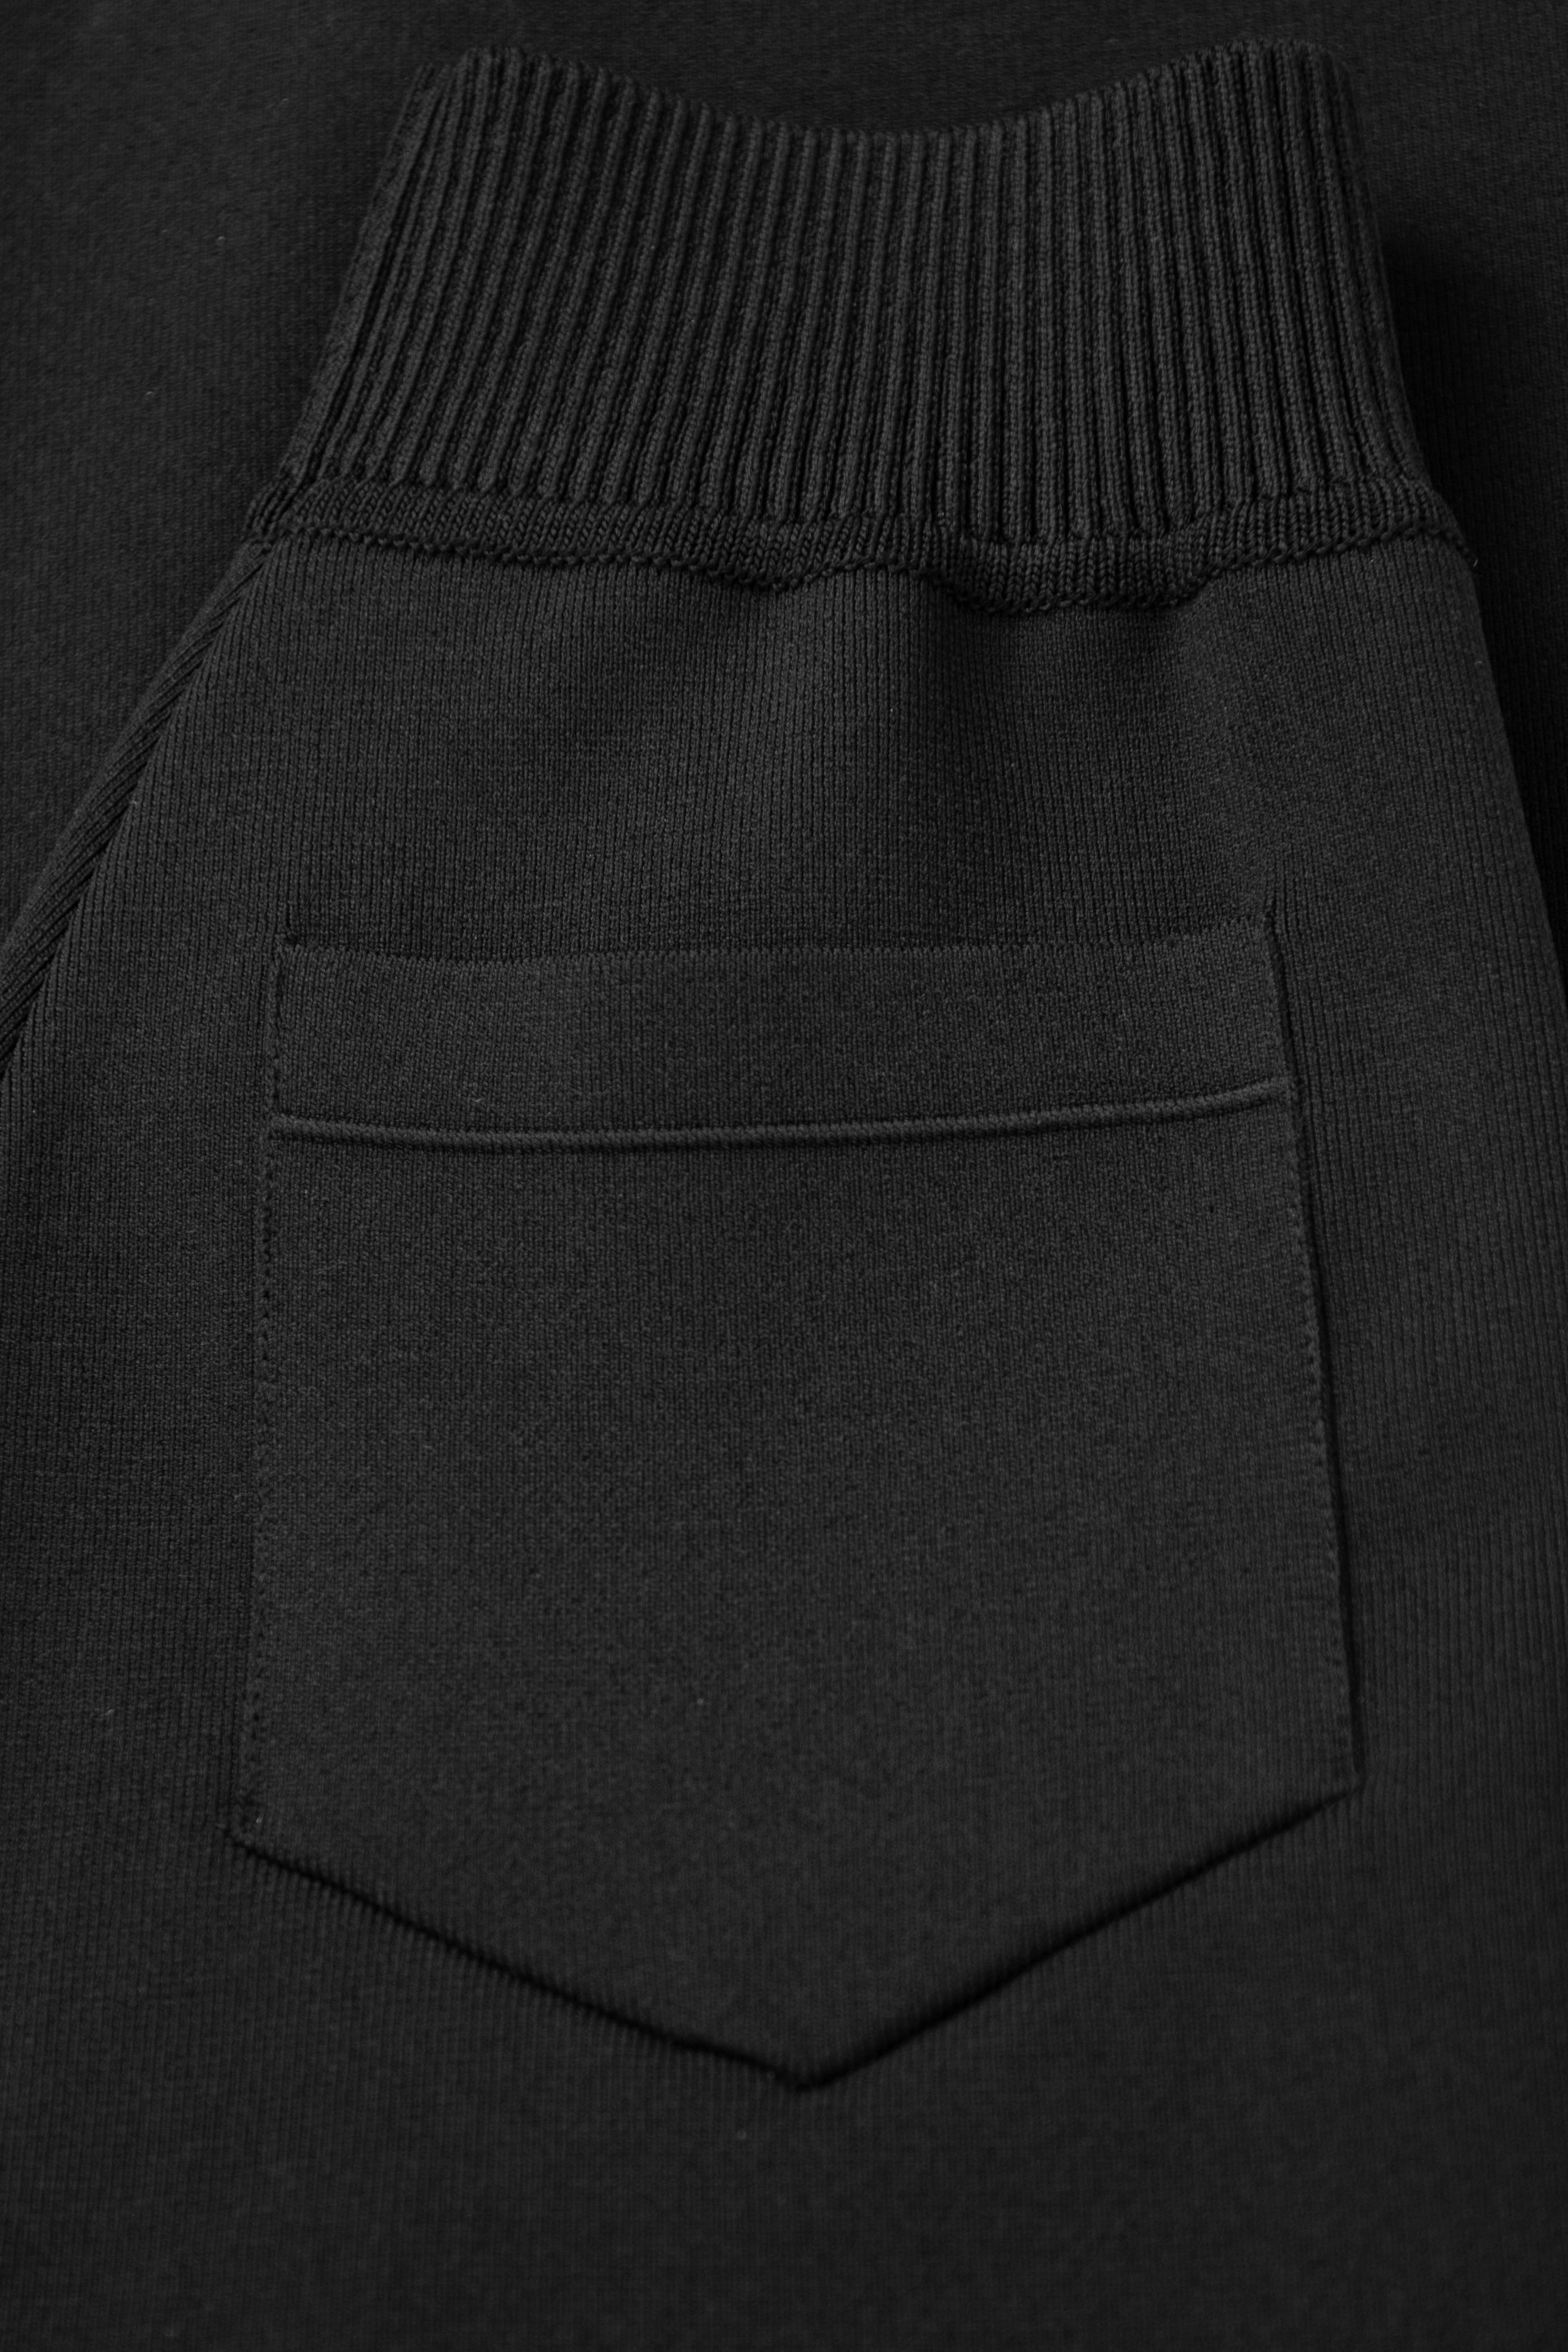 Skirt 4087-01 Black from BRUSNiKA